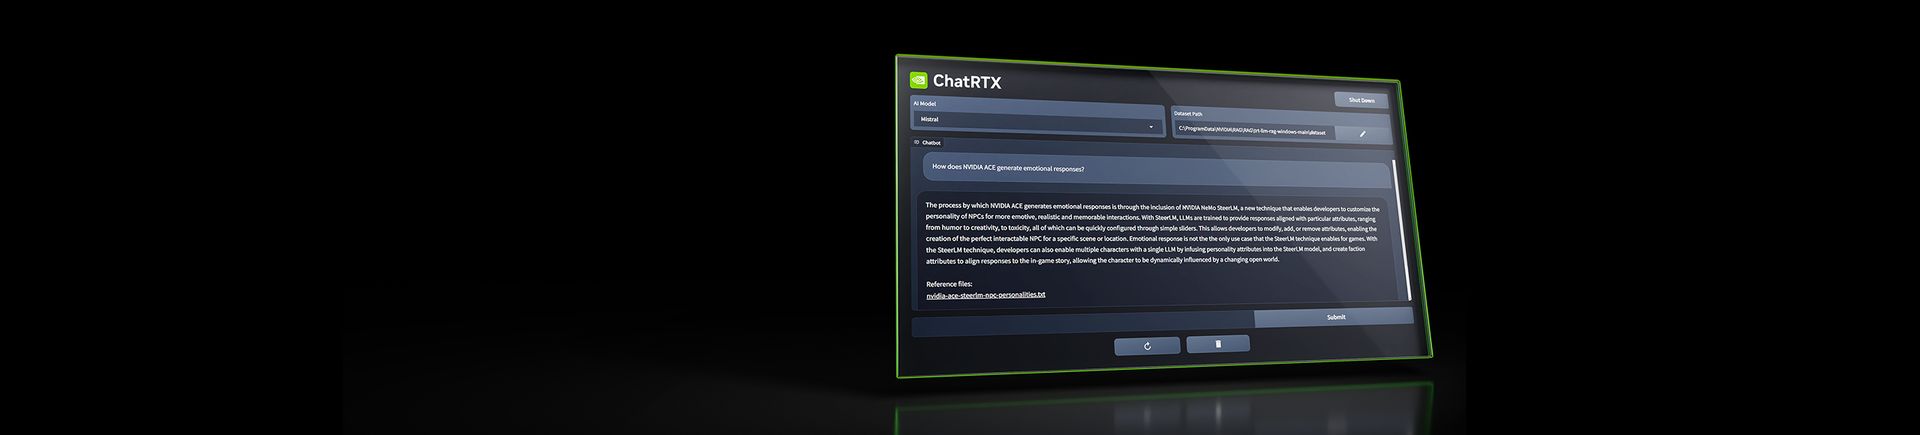 ¿Qué es NVIDIA ChatRTX y cómo usarlo?